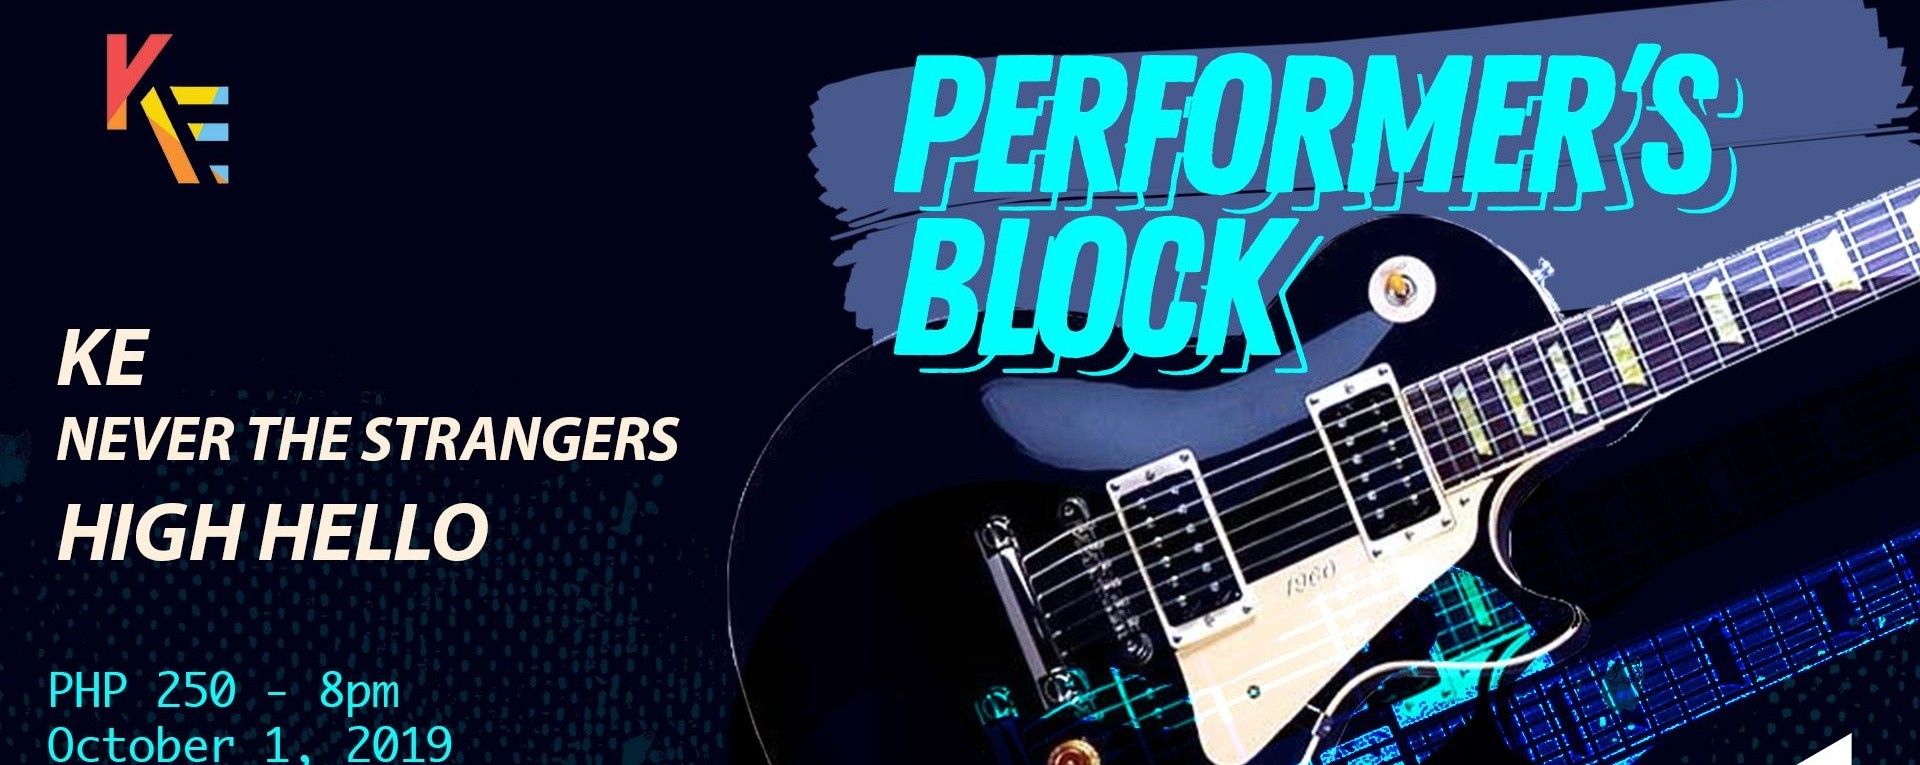 Performer's Block